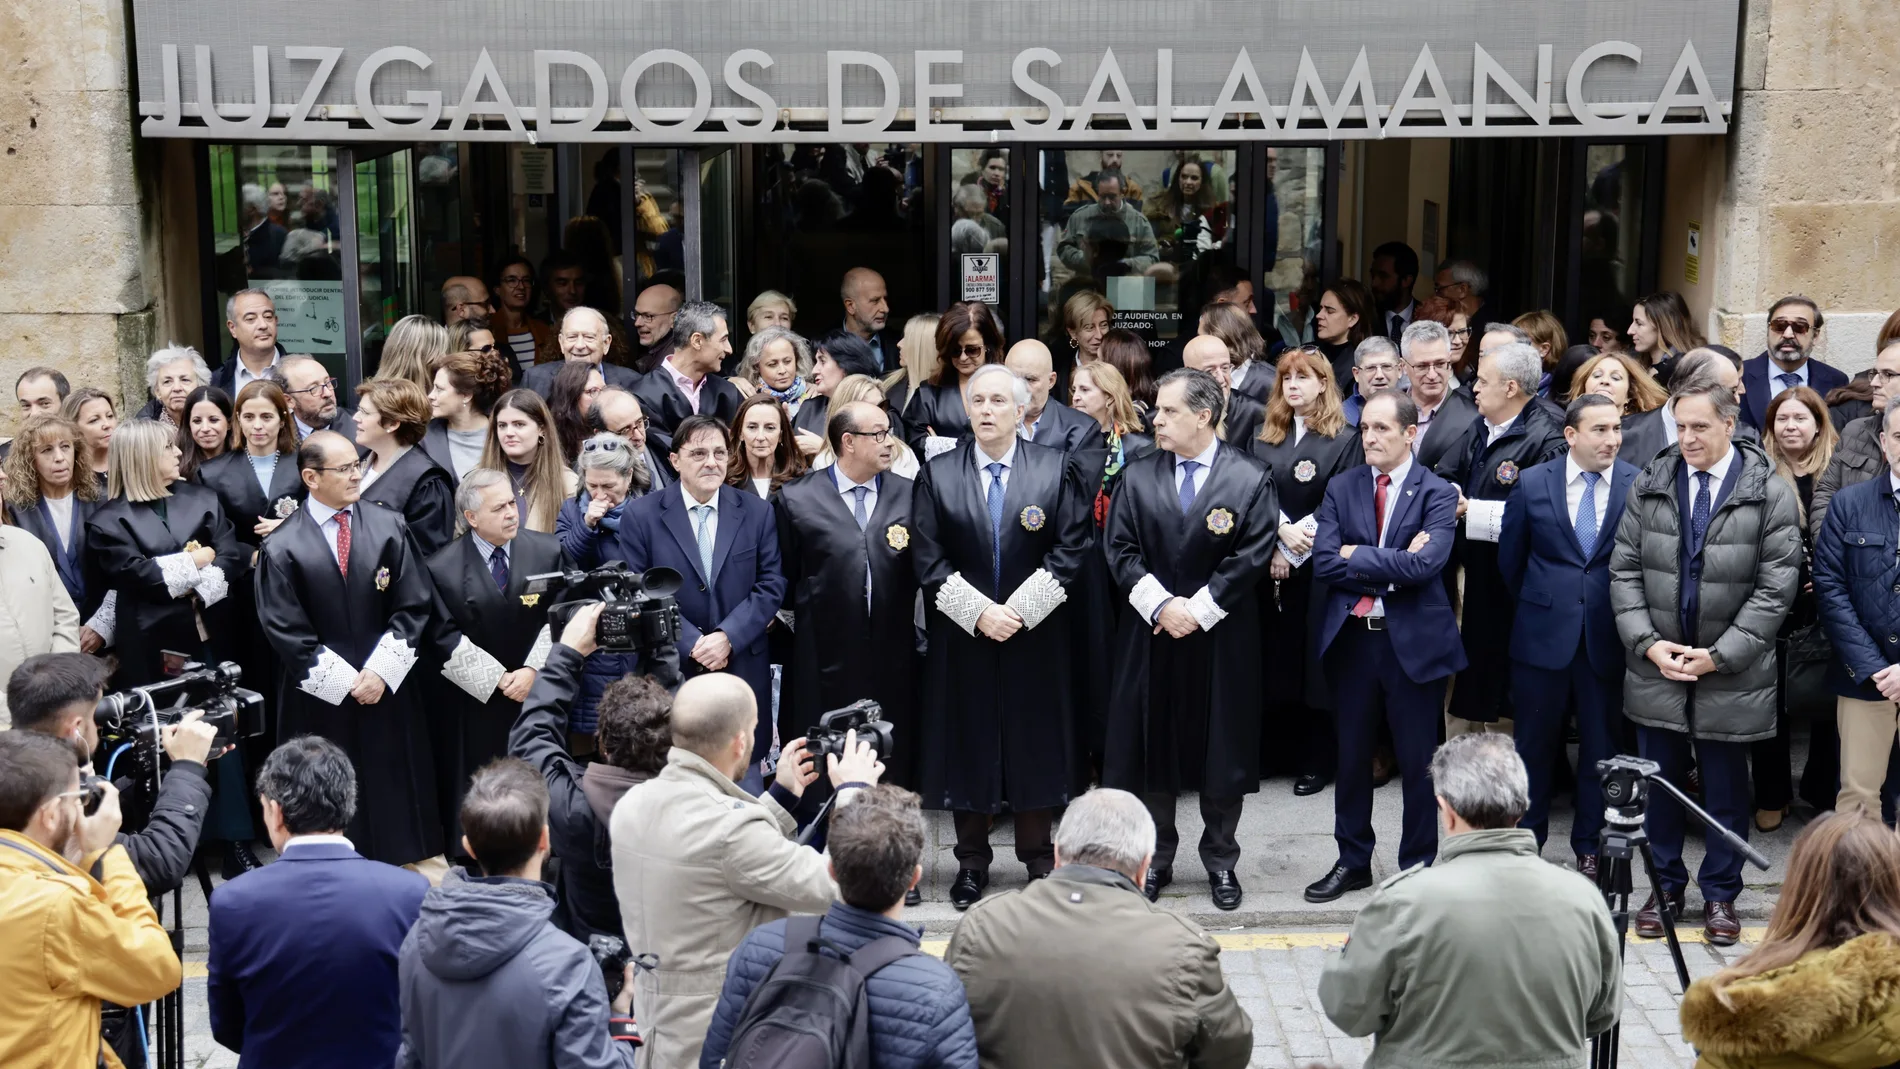 Unos 150 profesionales de justicia se concentran en la plaza de Colón de Salamanca para oponerse a la posibilidad de desarrollar comisiones de investigación en sede parlamentaria a fin de determinar la presencia de situaciones de judicialización de la política